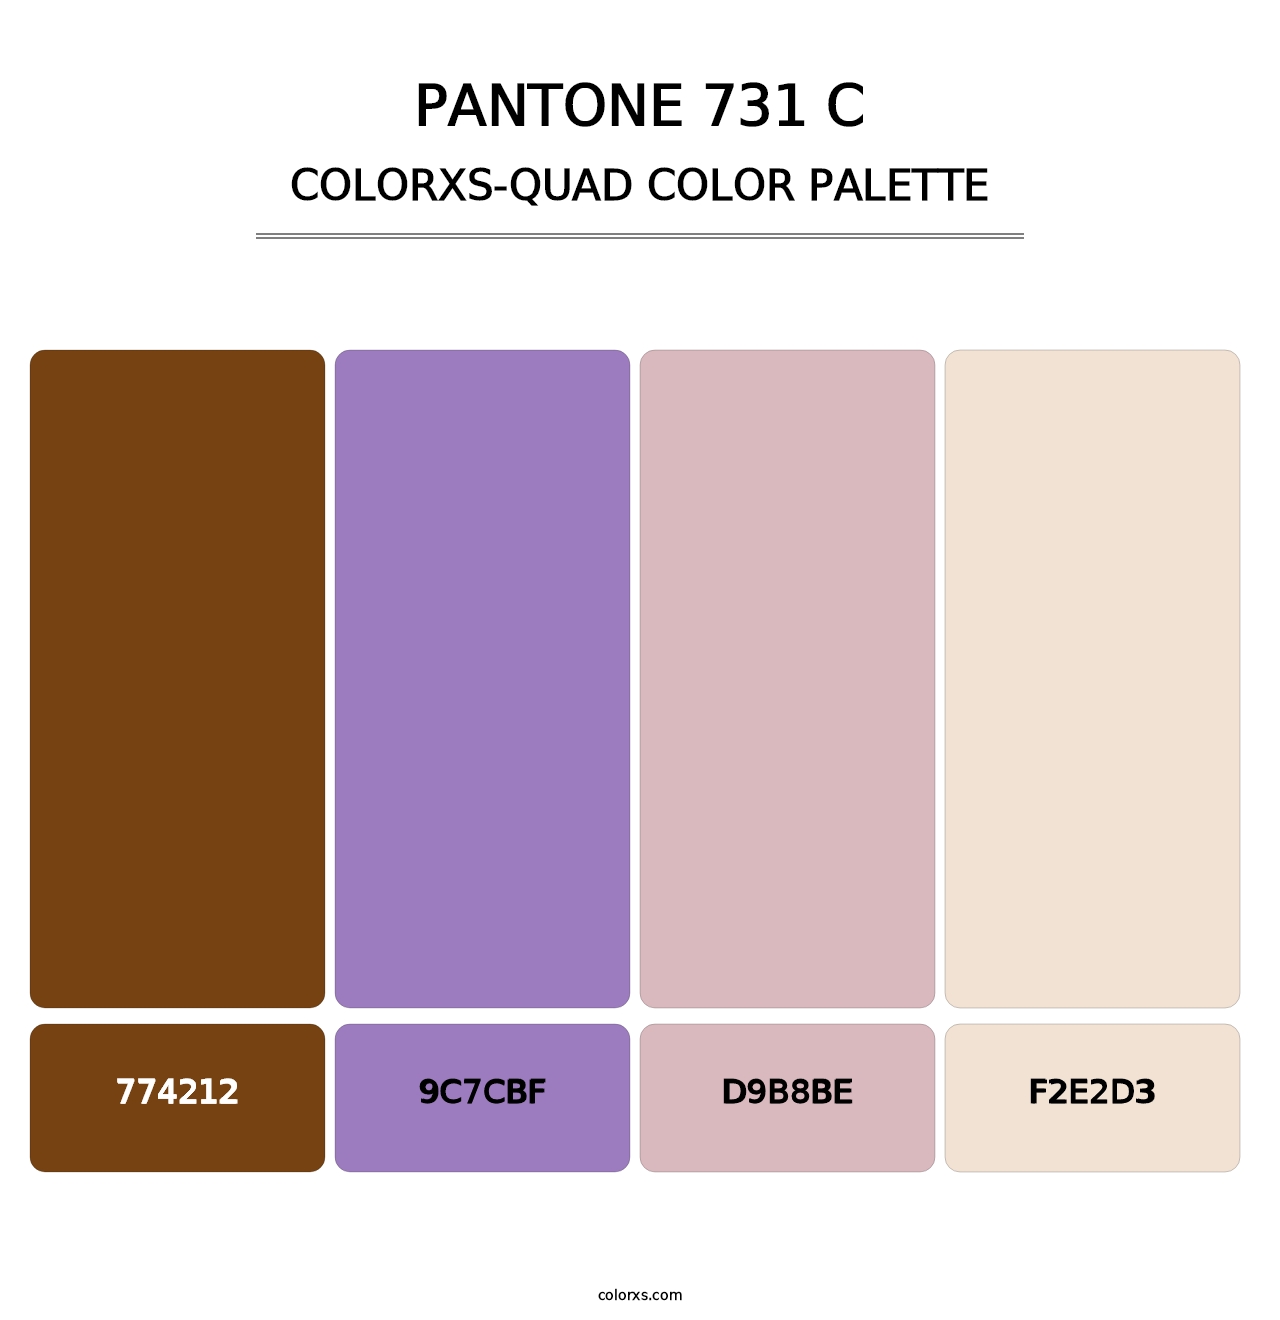 PANTONE 731 C - Colorxs Quad Palette